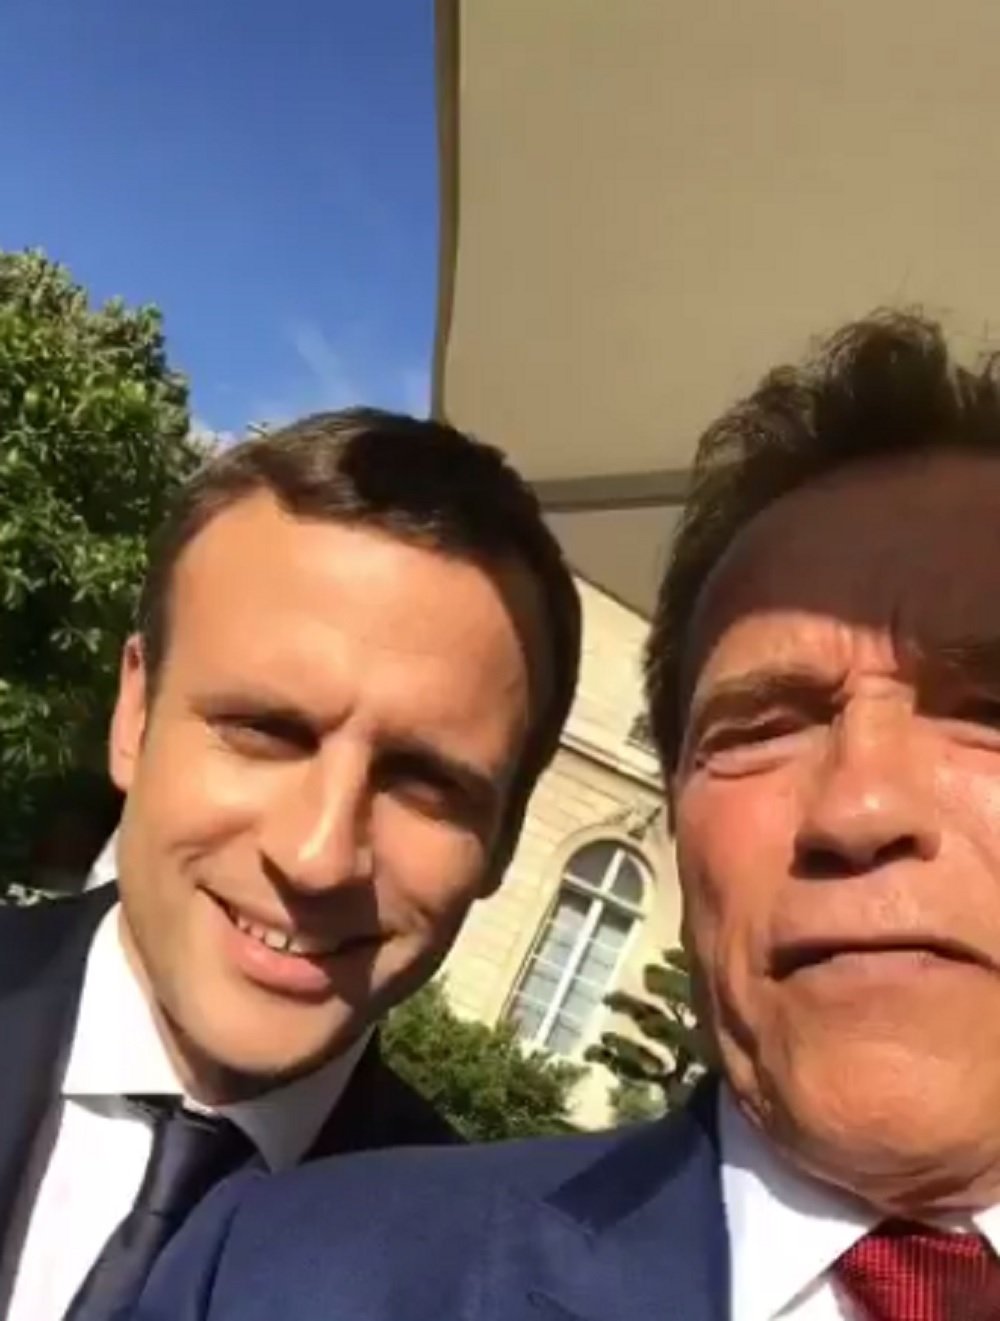 El videoselfie conjunt d’Arnold Schwarzenegger i Emmanuel Macron